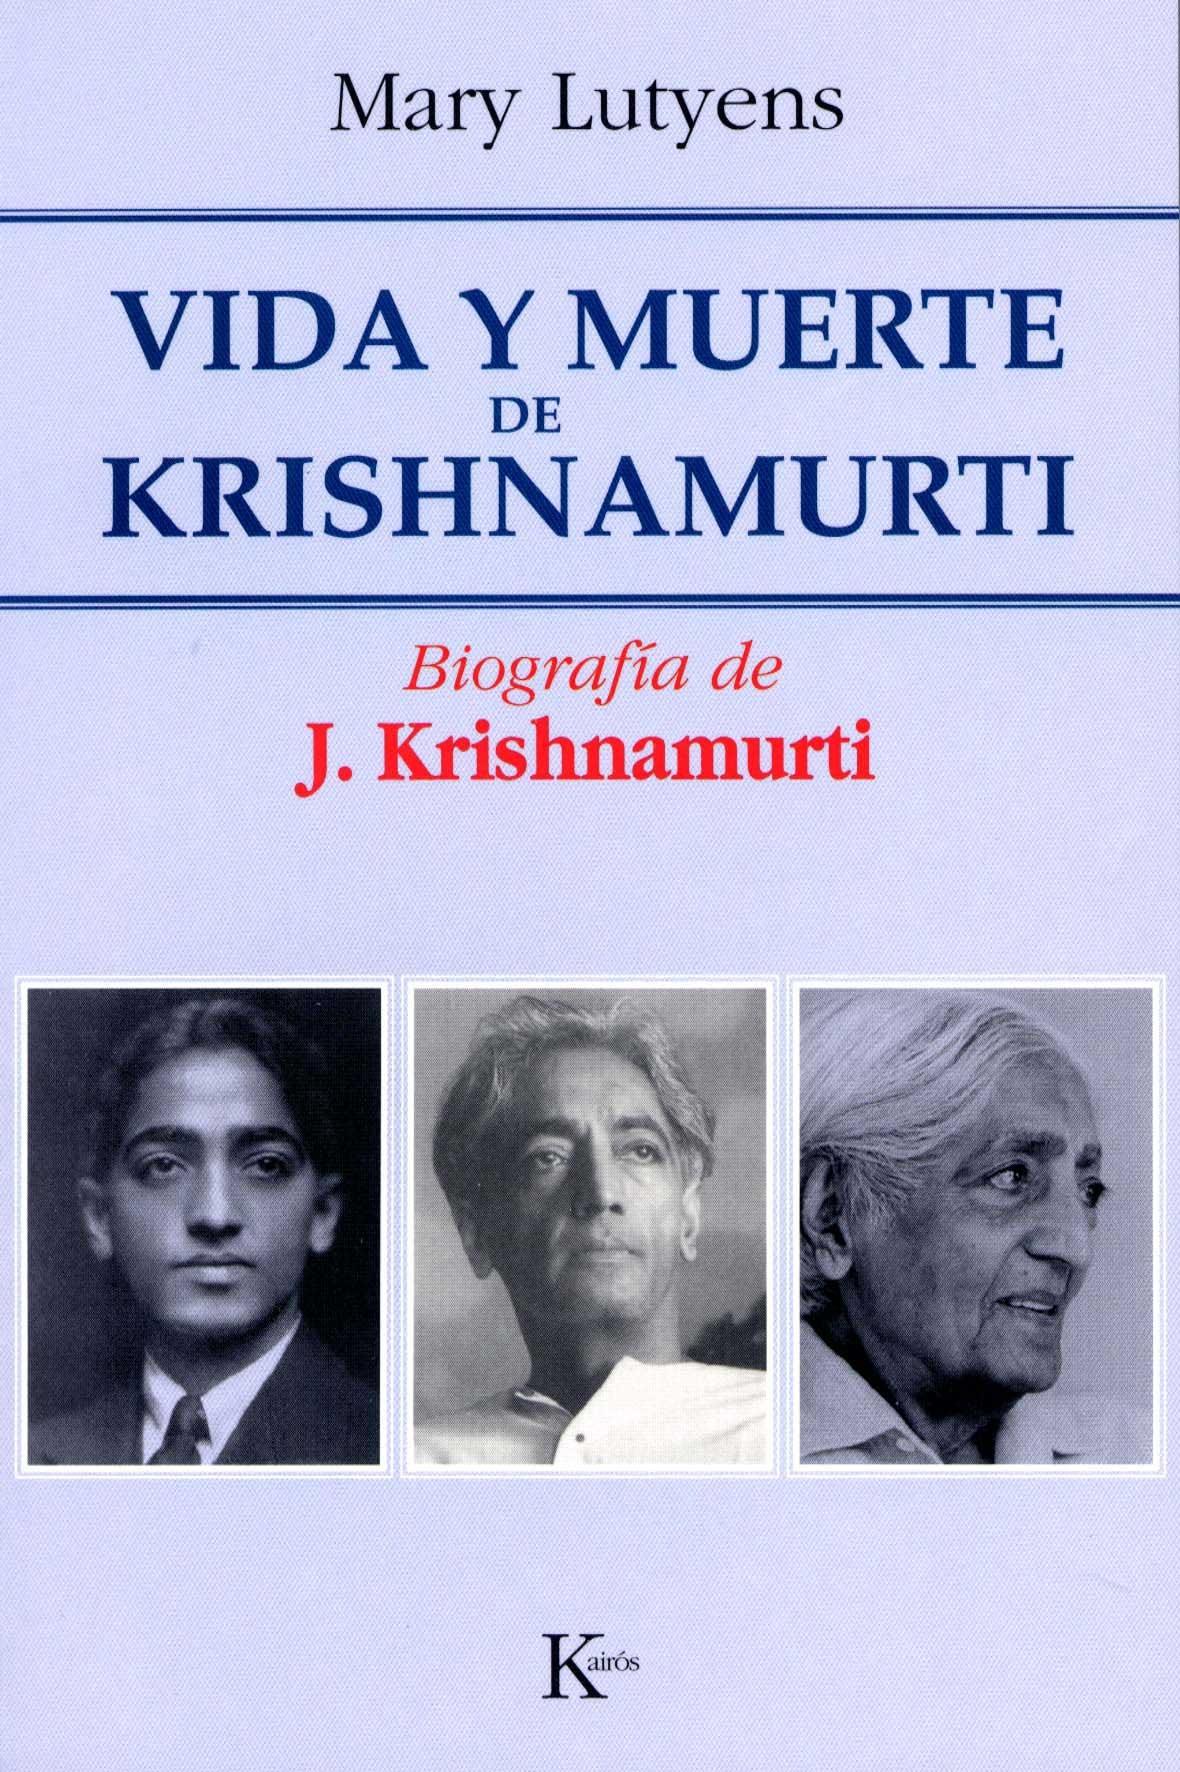 Vida y muerte de Krishnamurti (1895-1986) "biografía de J. Krishnamurti". 